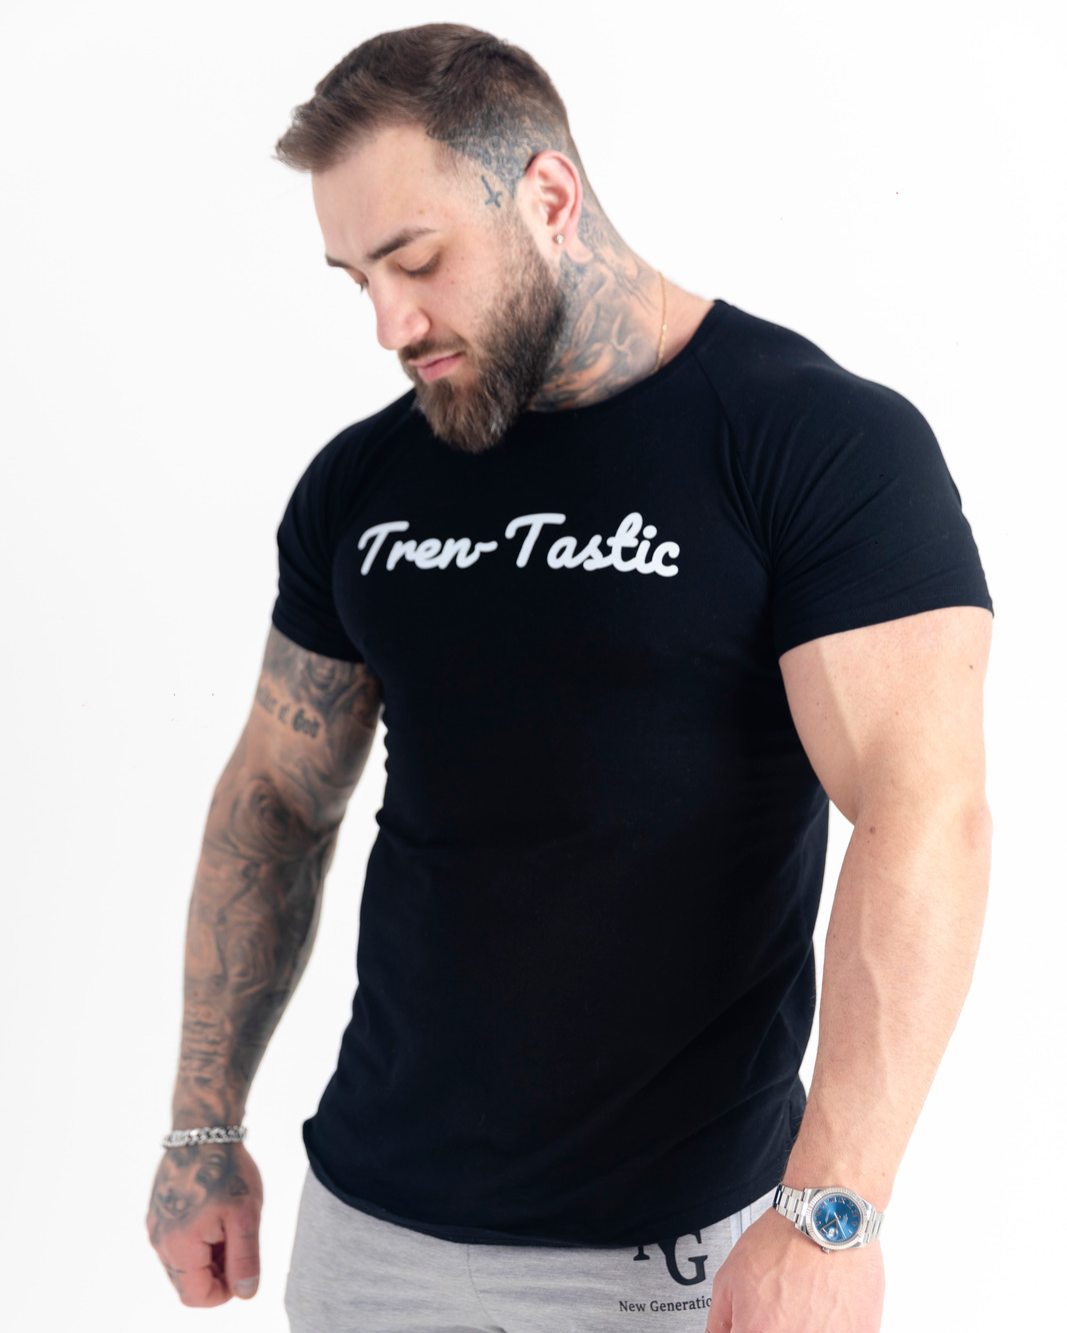 Tren-tastic t-shirt